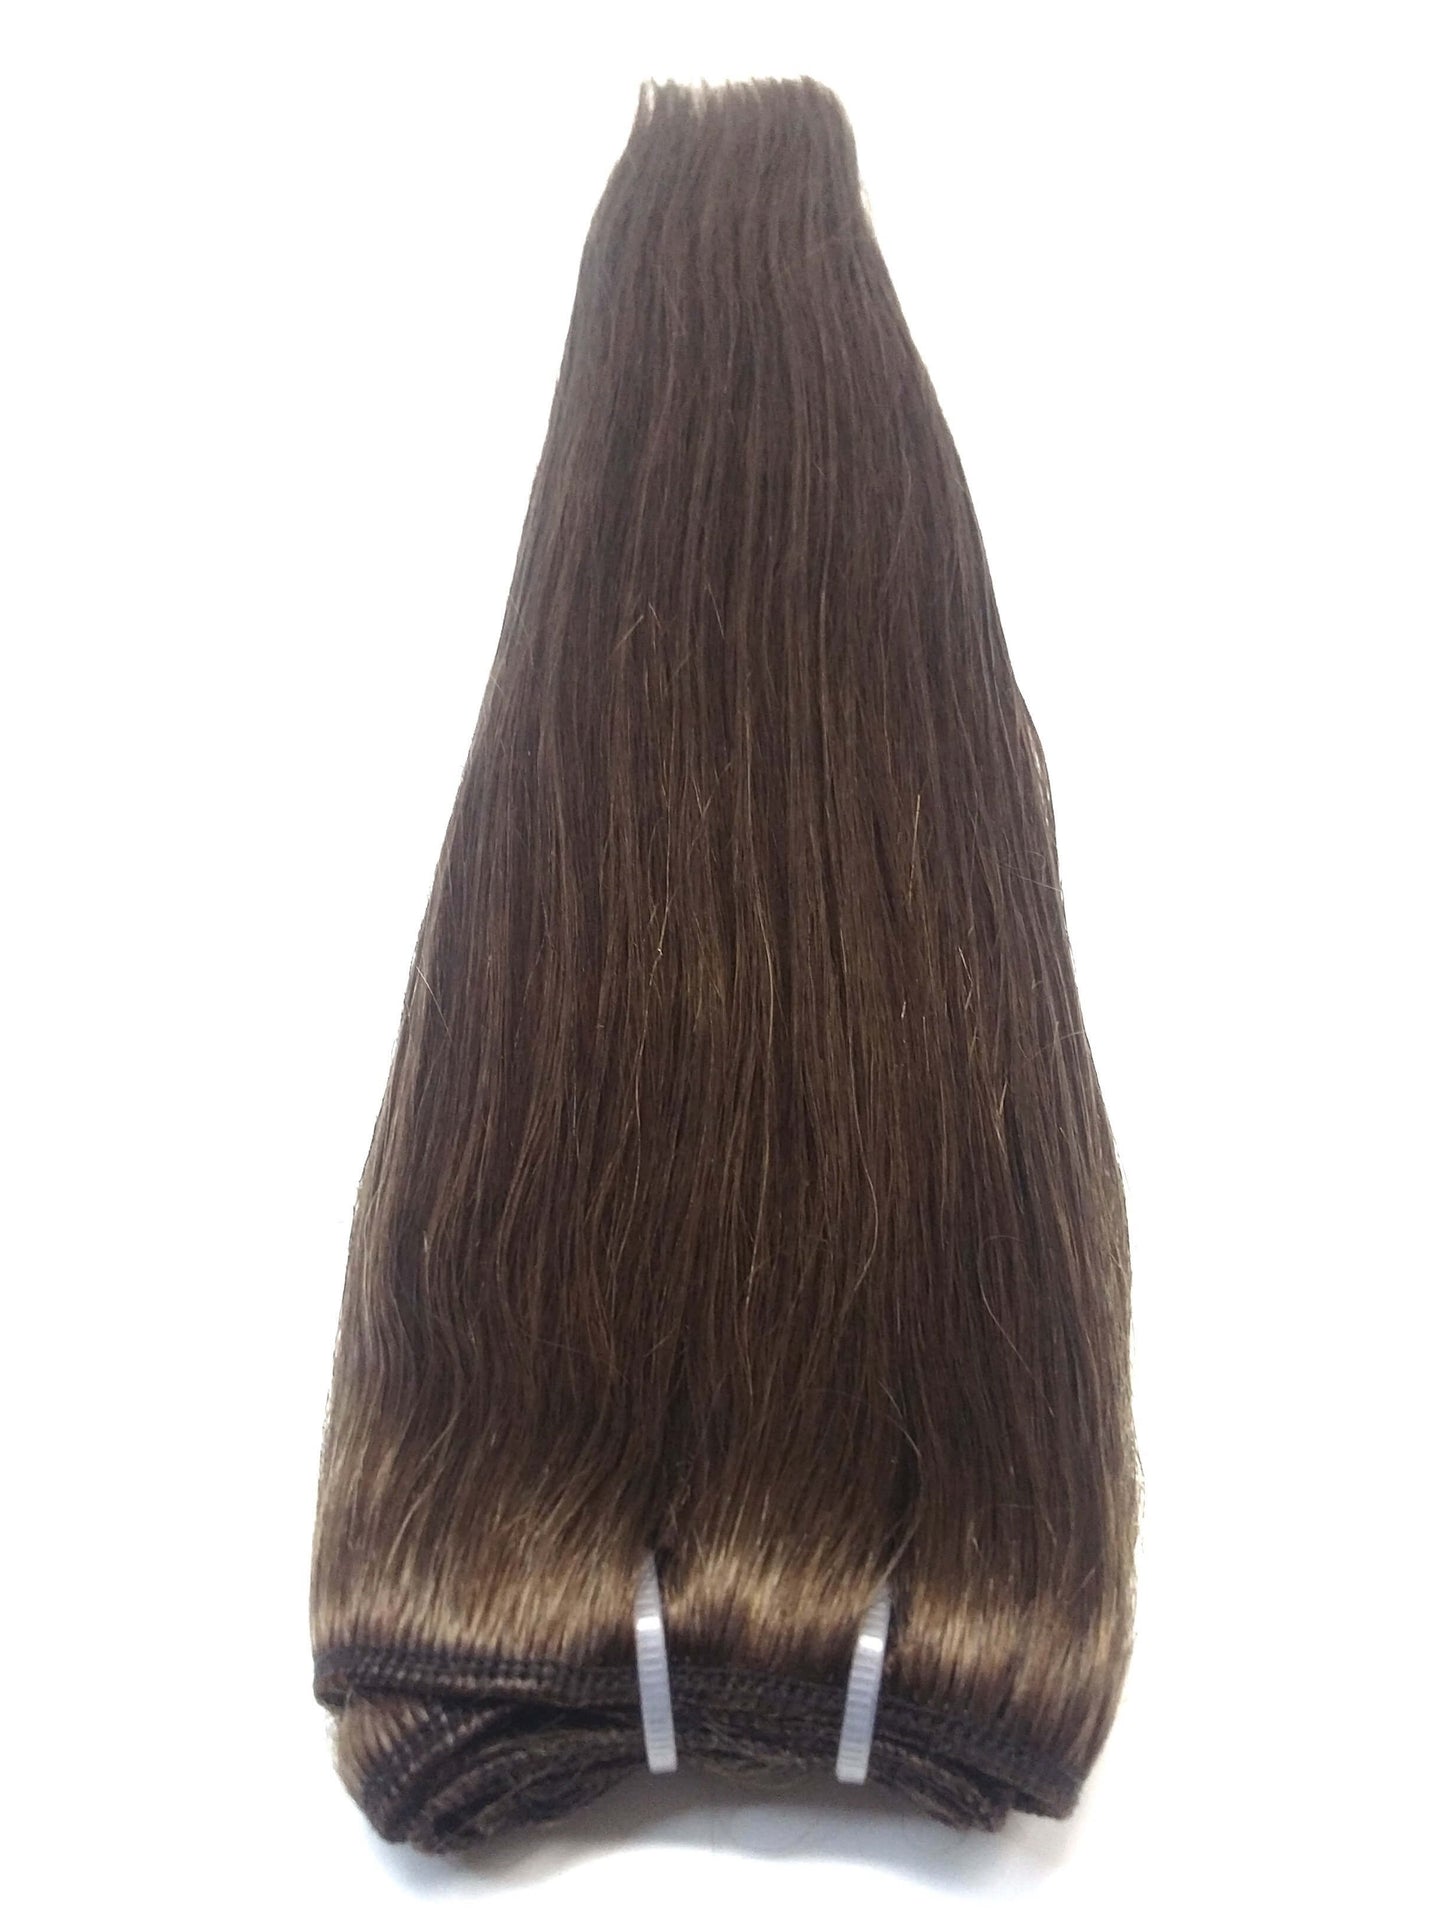 Brazilian Virgin Remy Human Hair - Inslag, 20'', Rak, Färg 3, 100g, Snabbleverans